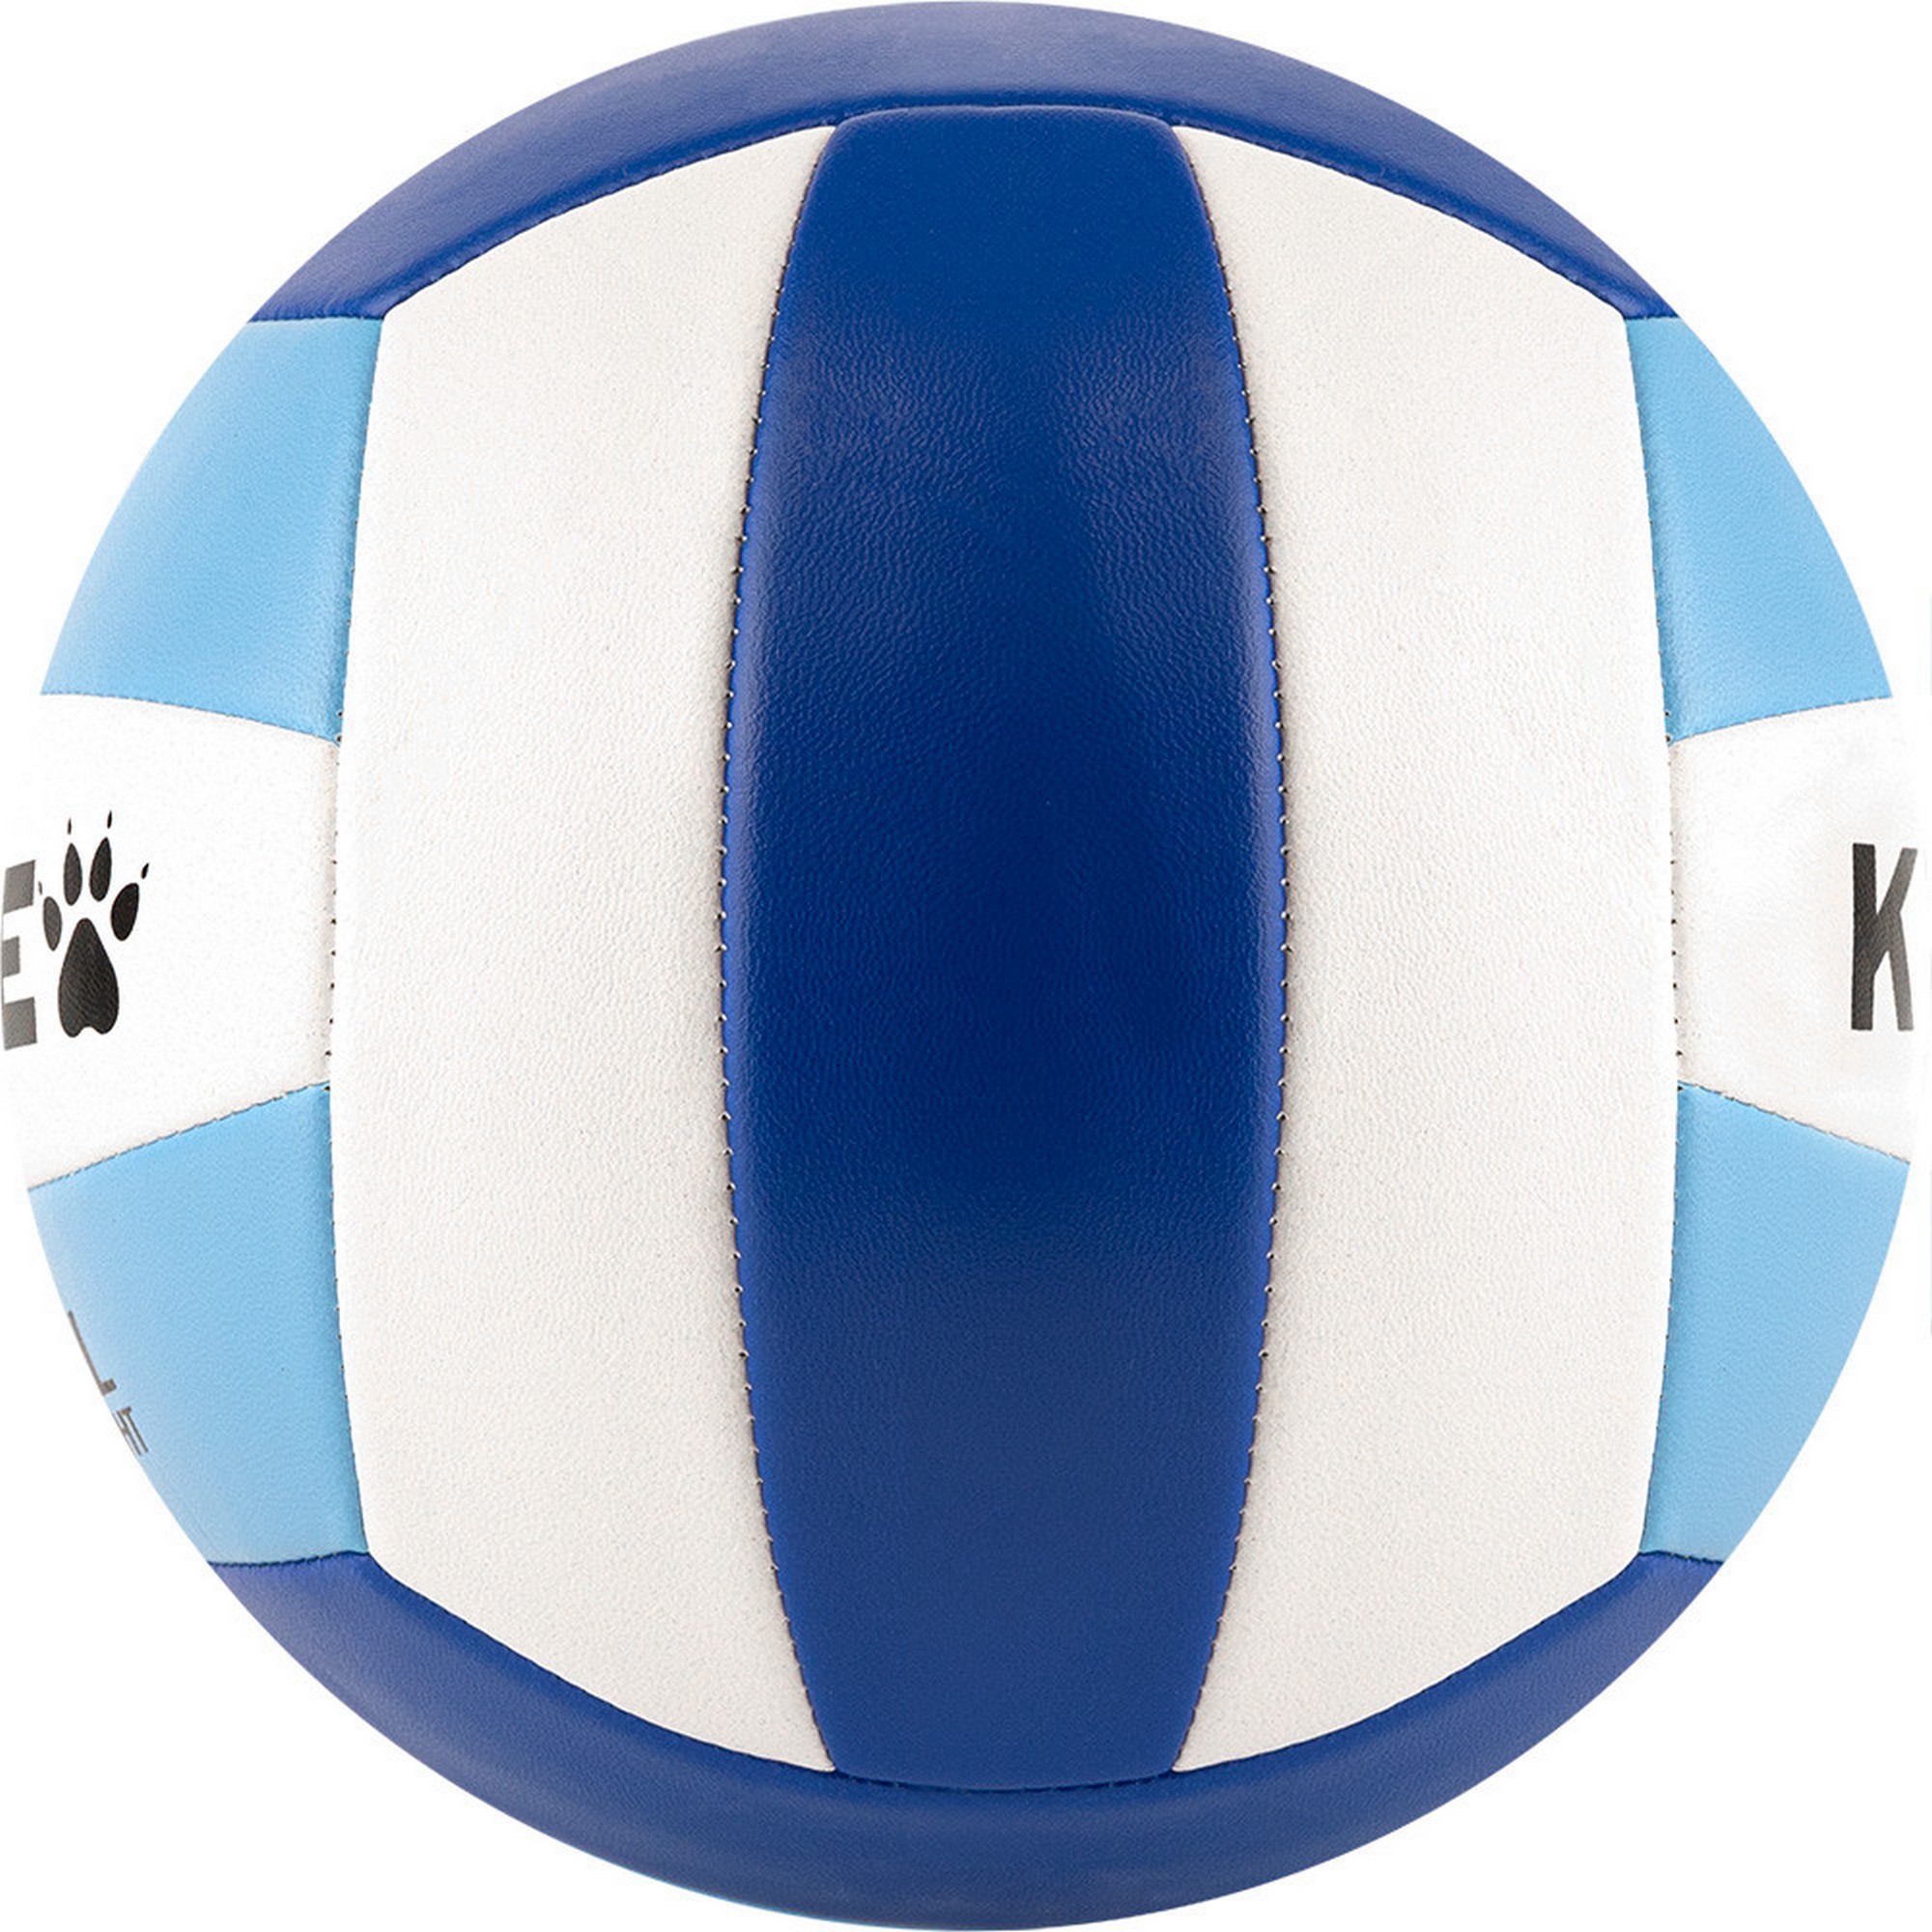 Мяч волейбольный Kelme 8203QU5017-162 р. 5 2000_2000